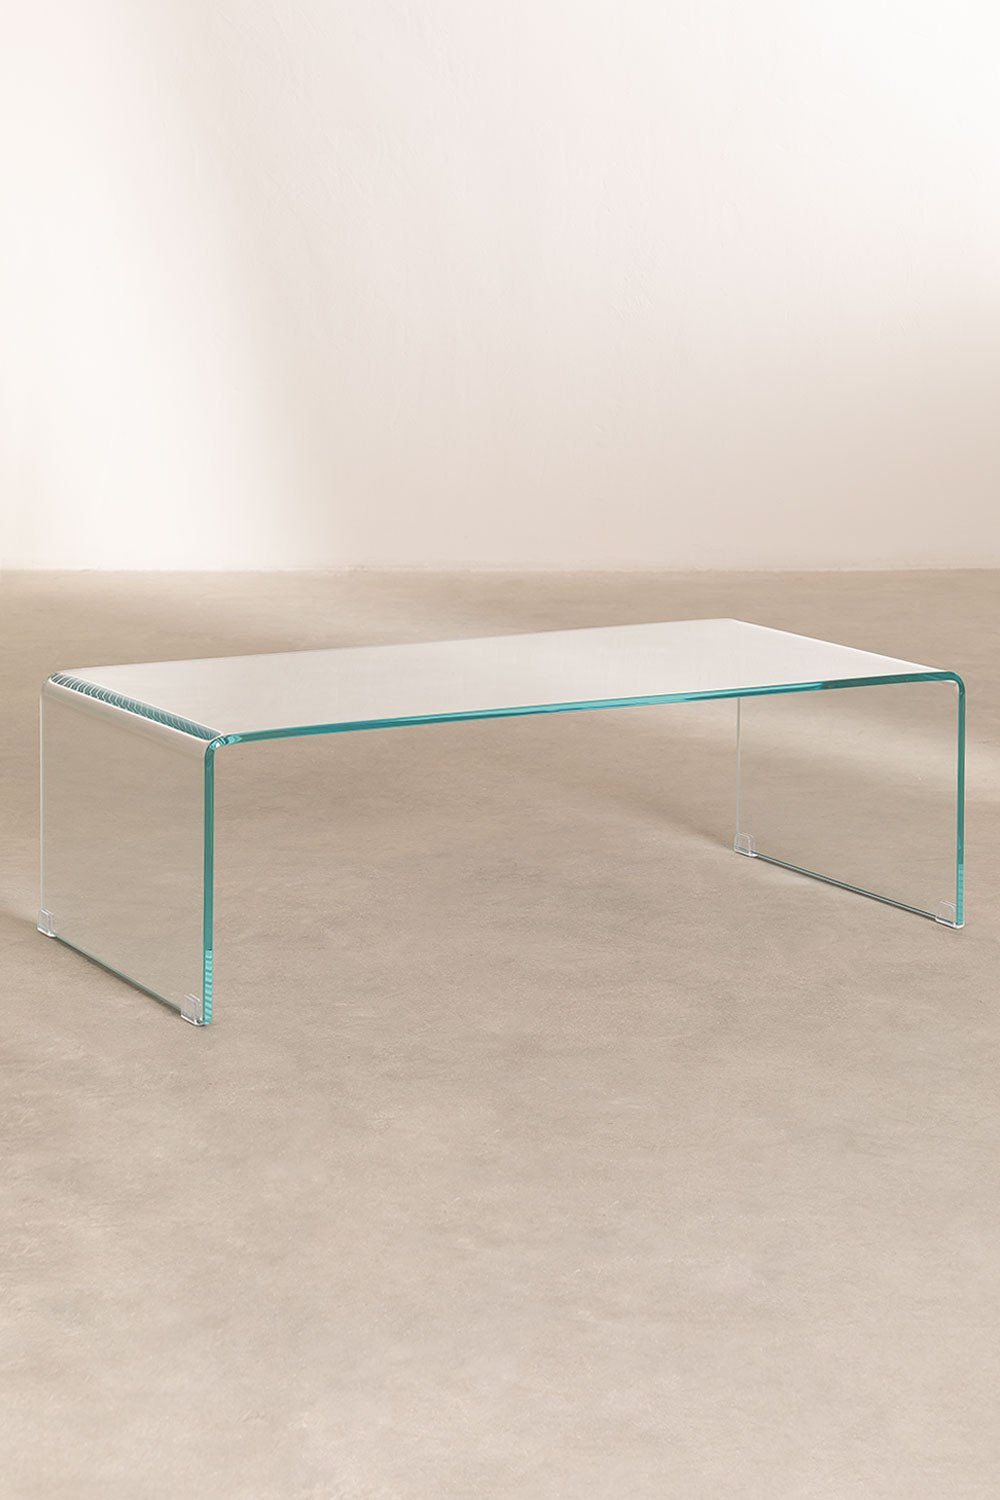 Mesa de centro de vidro transparente (110x55 cm) Crhis, imagem de galeria 2